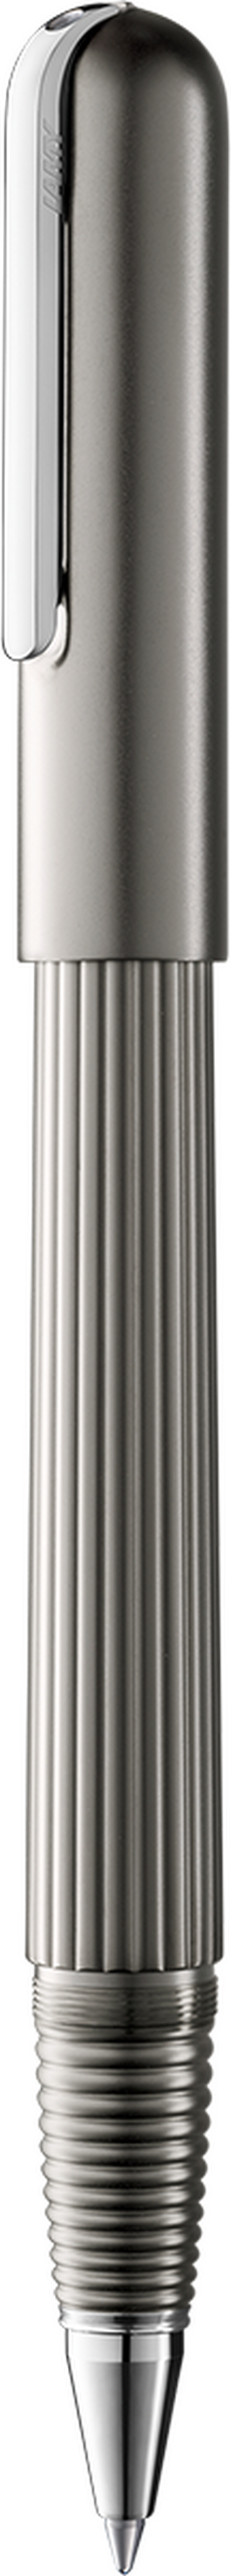 Tintenroller LAMY imporium titanium-platin M-schwarz